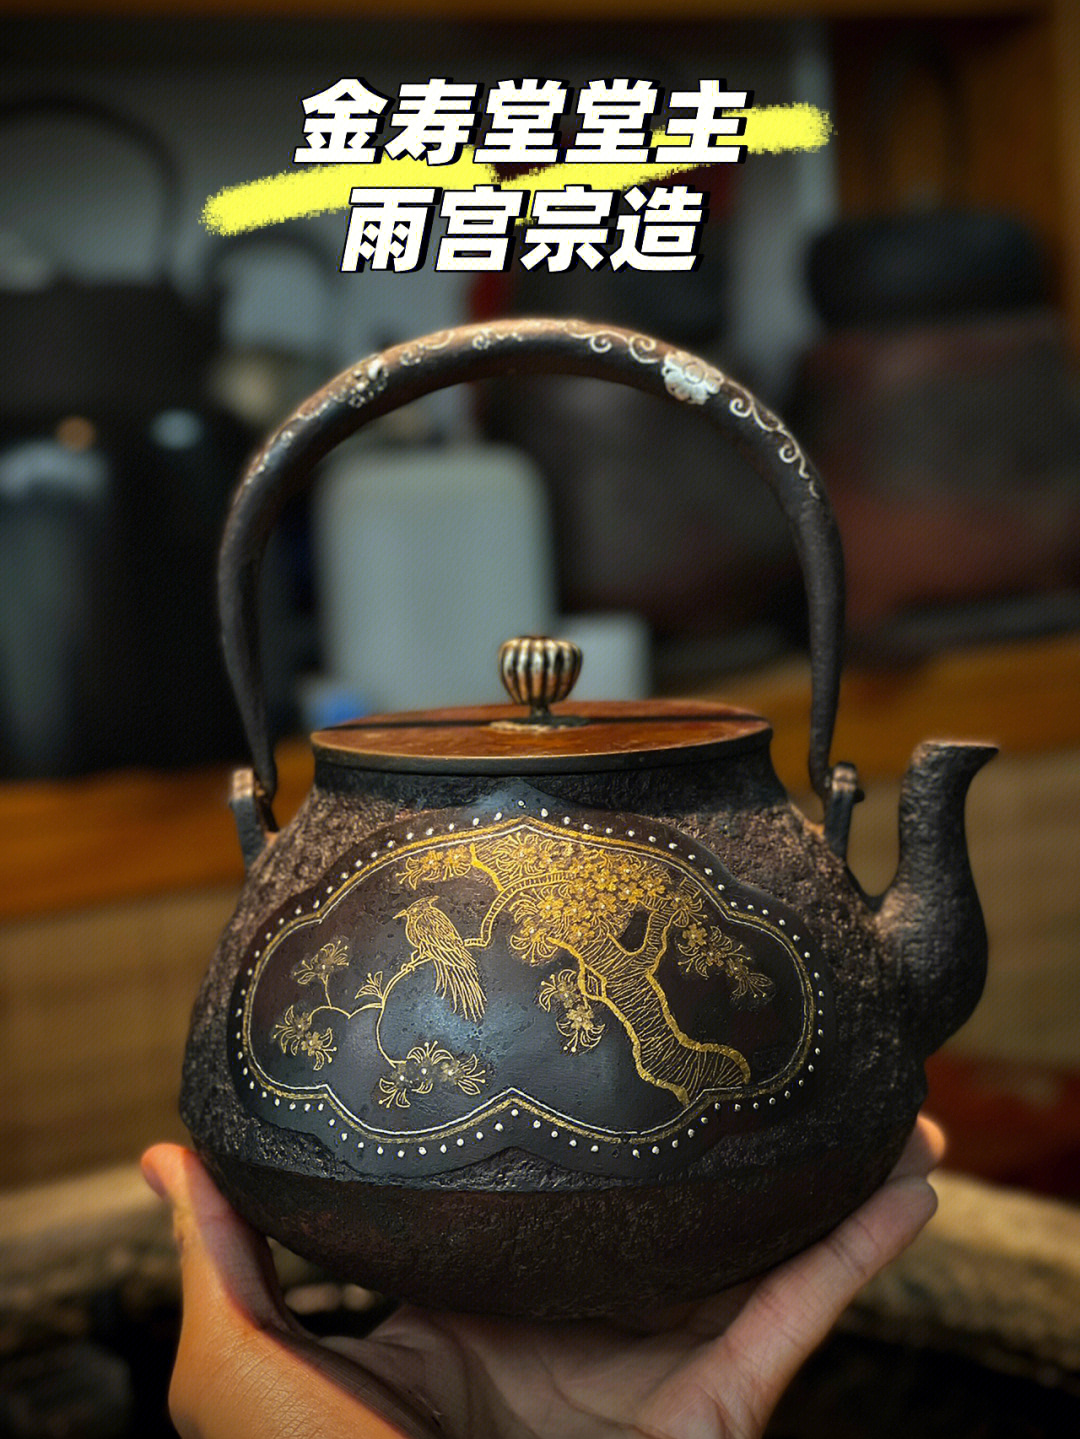 鉴赏百年前日本顶级老铁壶金寿堂堂主雨宫